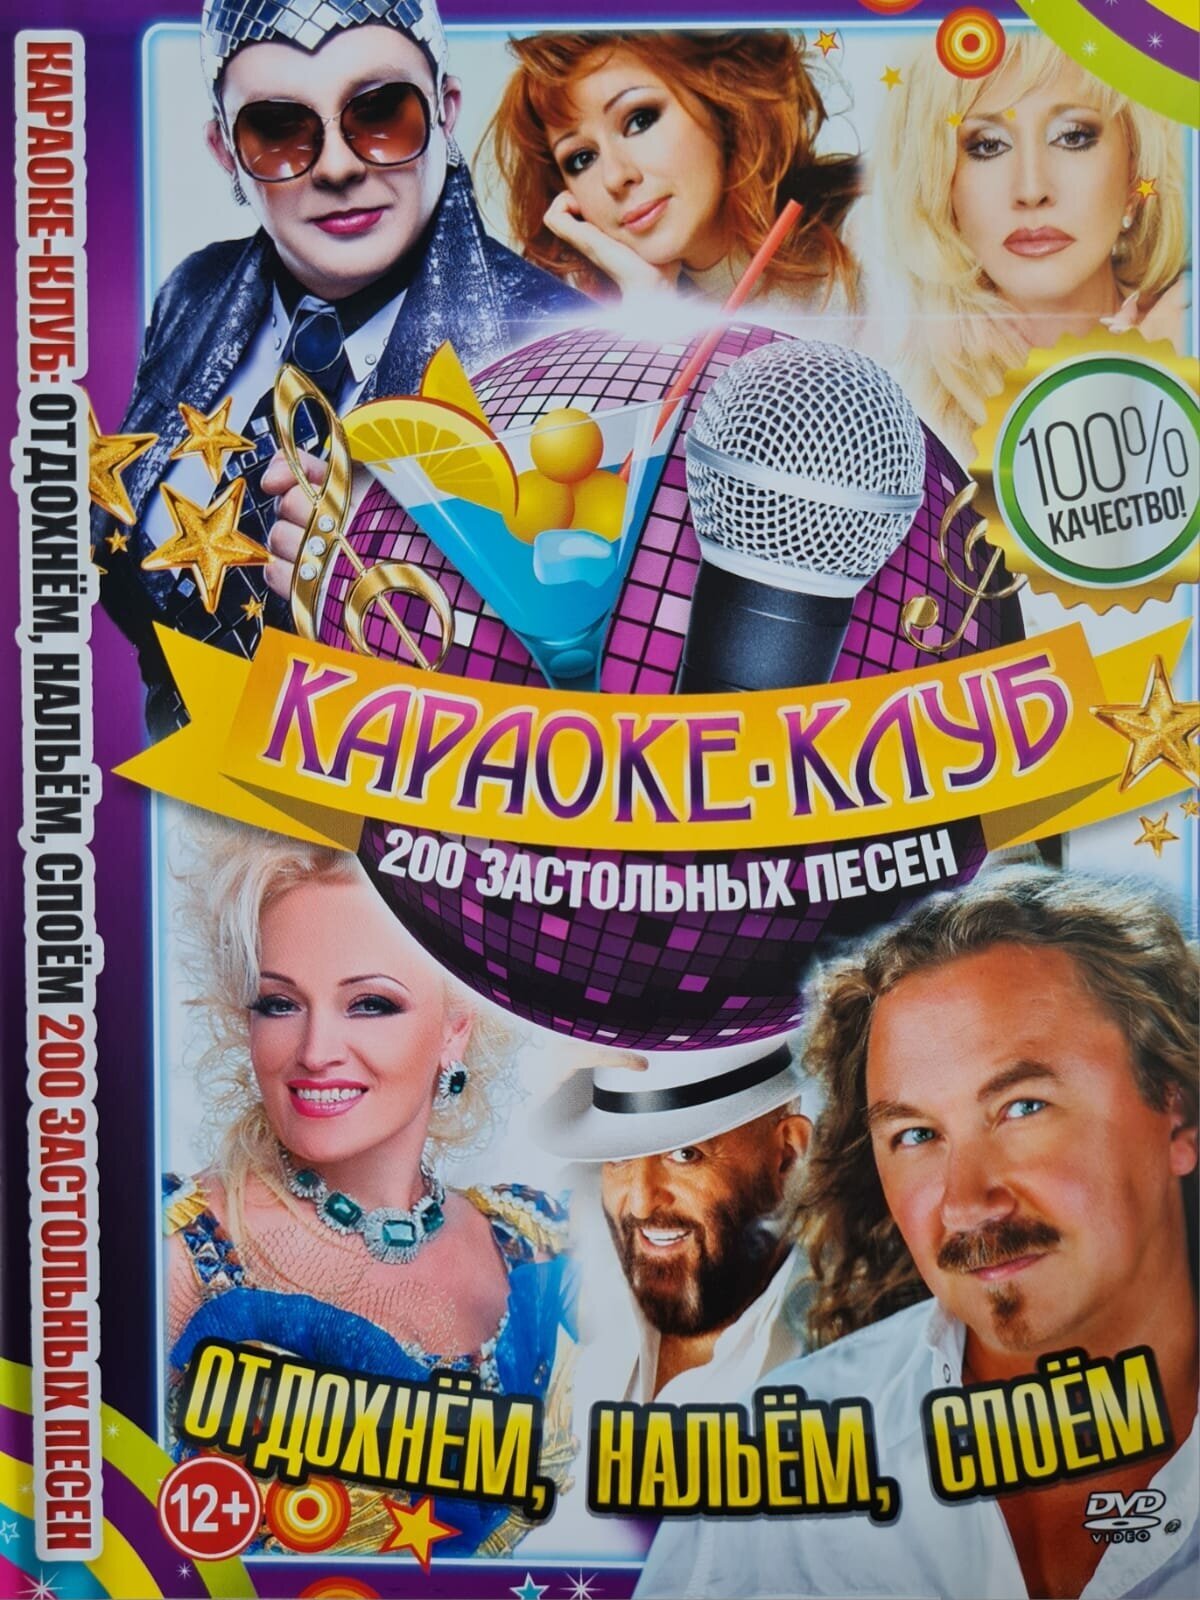 Караоке-Клуб "Отдохнем нальем споем" 200 застольных песен. DVD (12+)